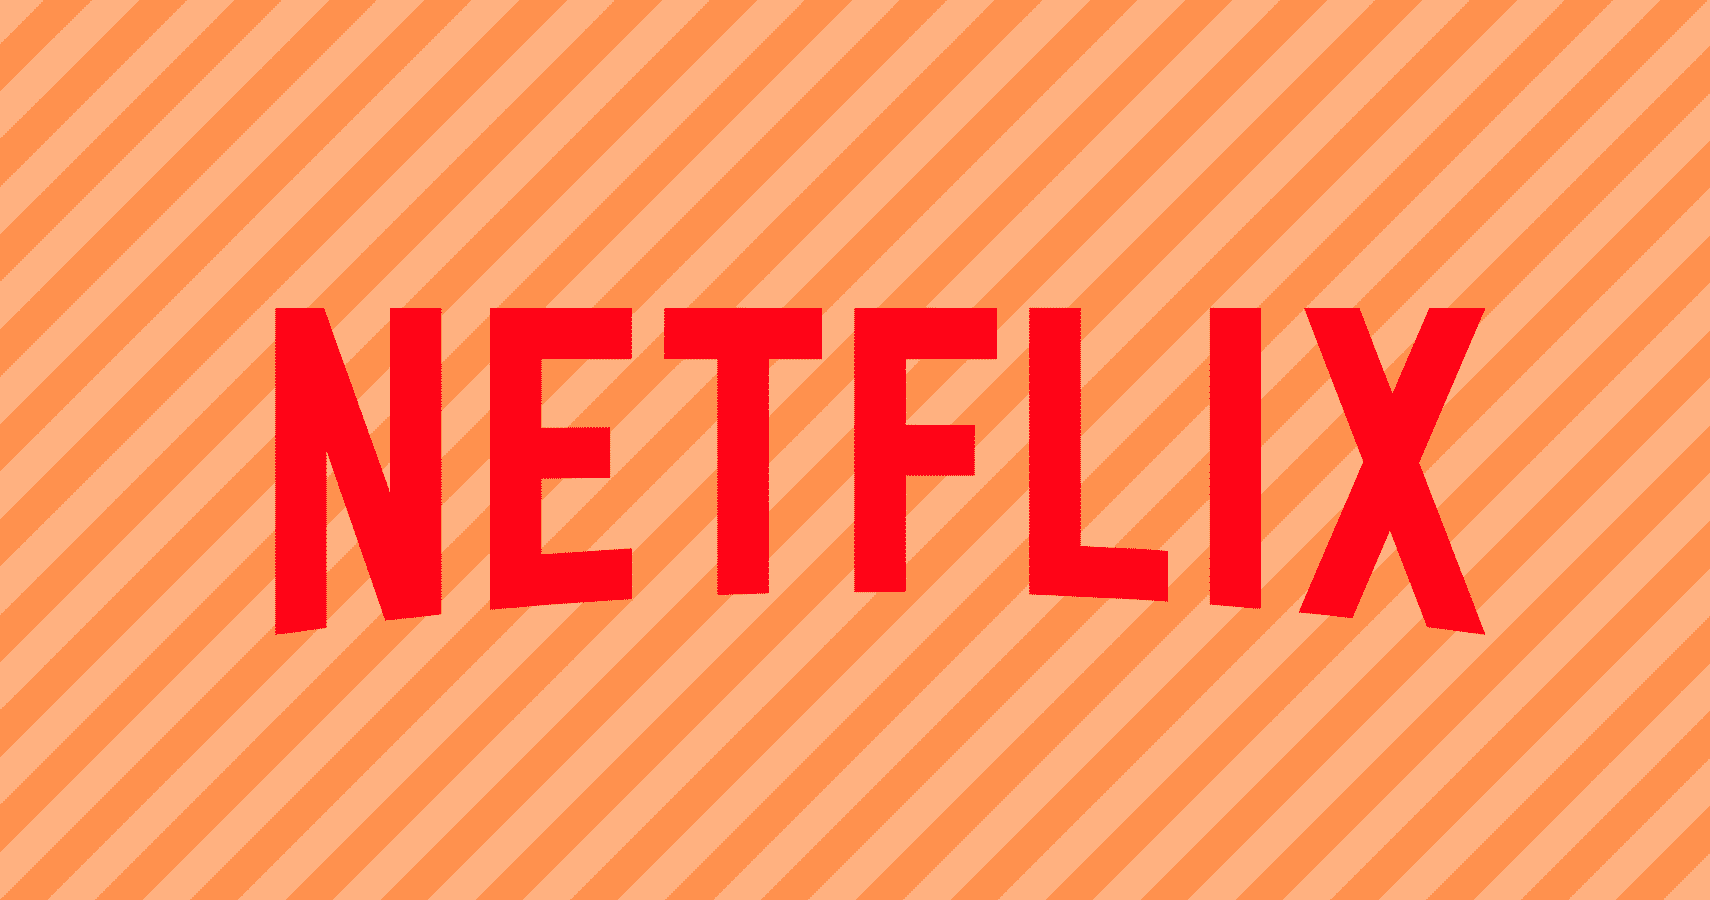 Ainda acreditam! Depois de um ano, fãs continuam campanha para salvar popular série da Netflix